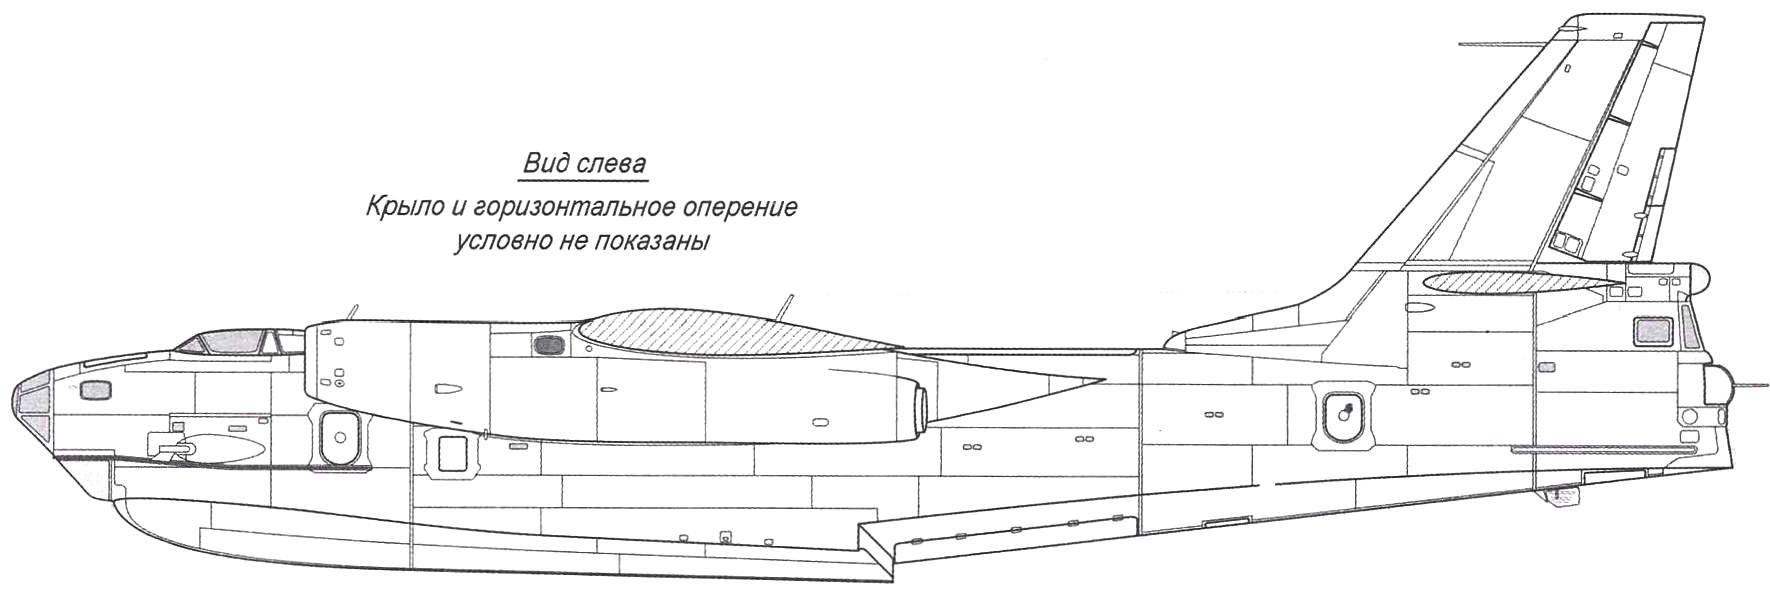 Бе-10 с удлинёнными воздухозаборниками